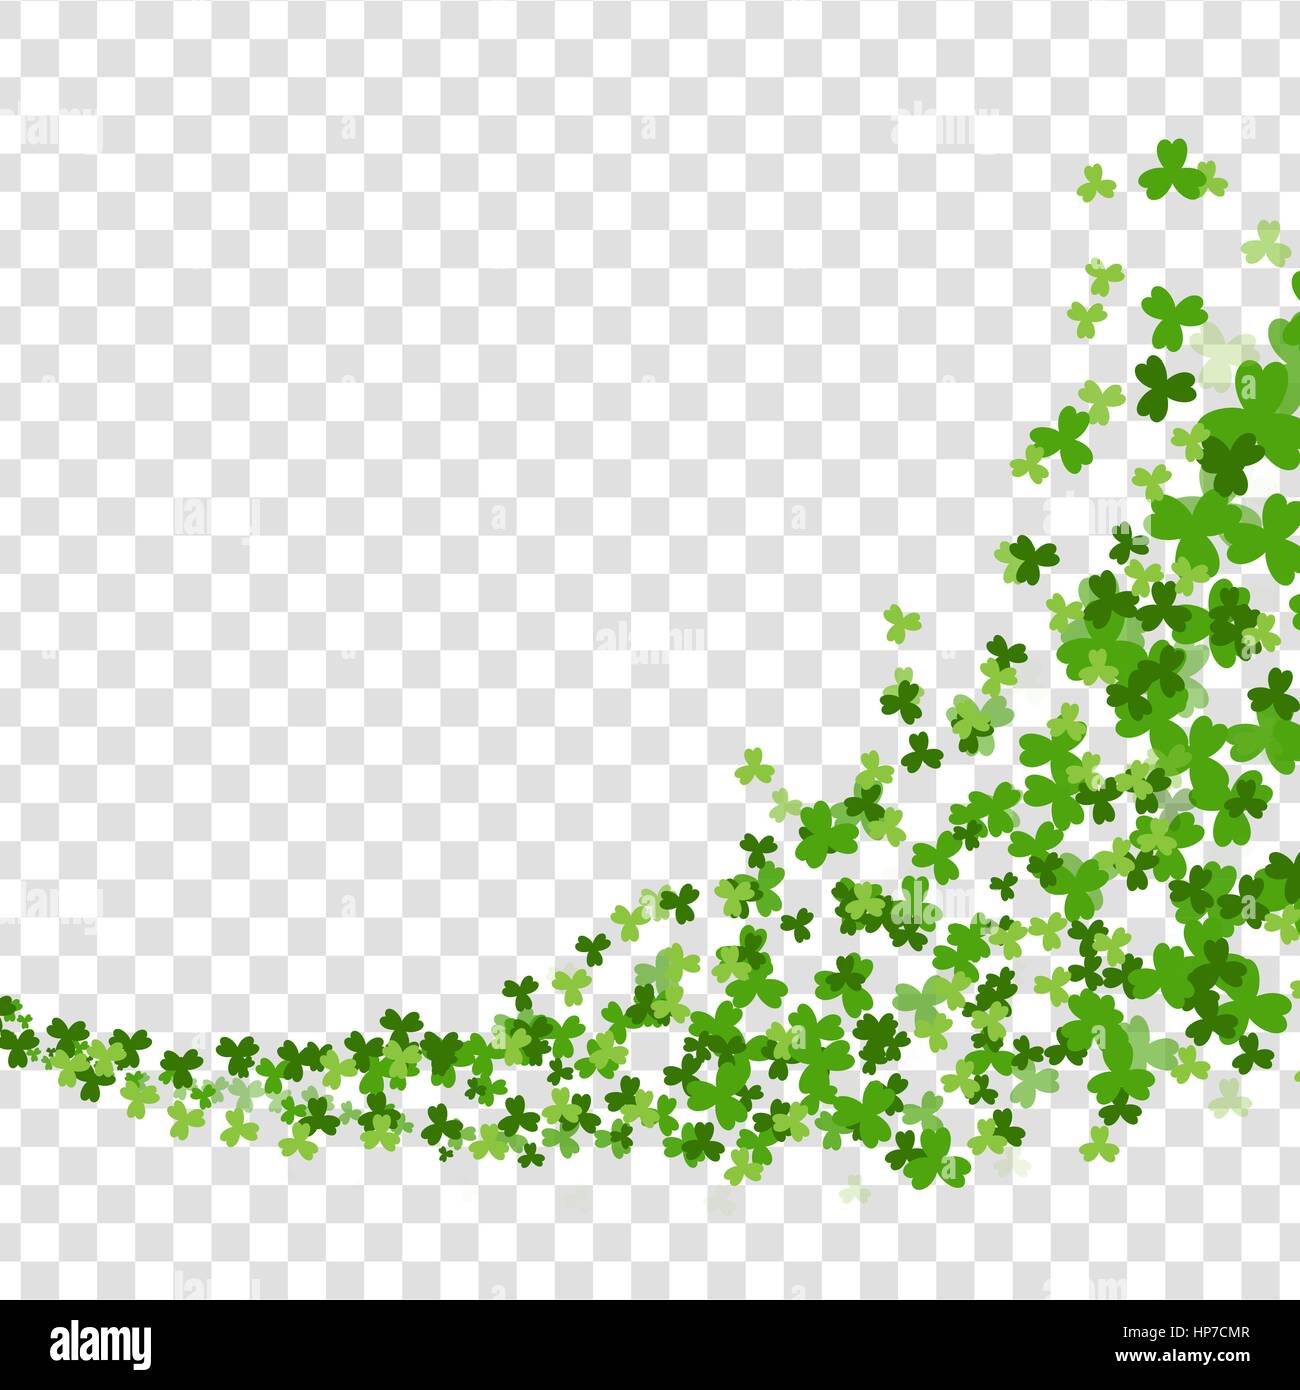 Wirbel Wirbel grünen Klee. Gruß glücklich St. Patricks Day. Grünen Klee zufällig fallen auf transparentem Hintergrund. Vektor-Illustration. Irische Zeichen und Stock Vektor